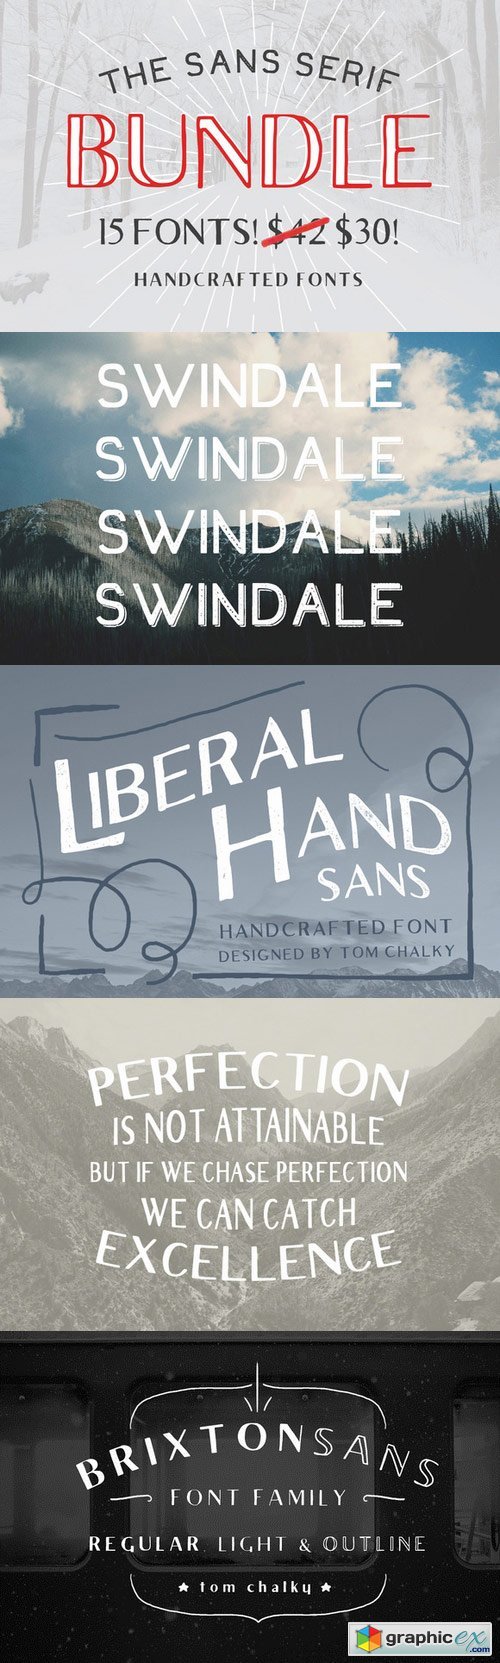 The Sans Serif Bundle - 15 Fonts!